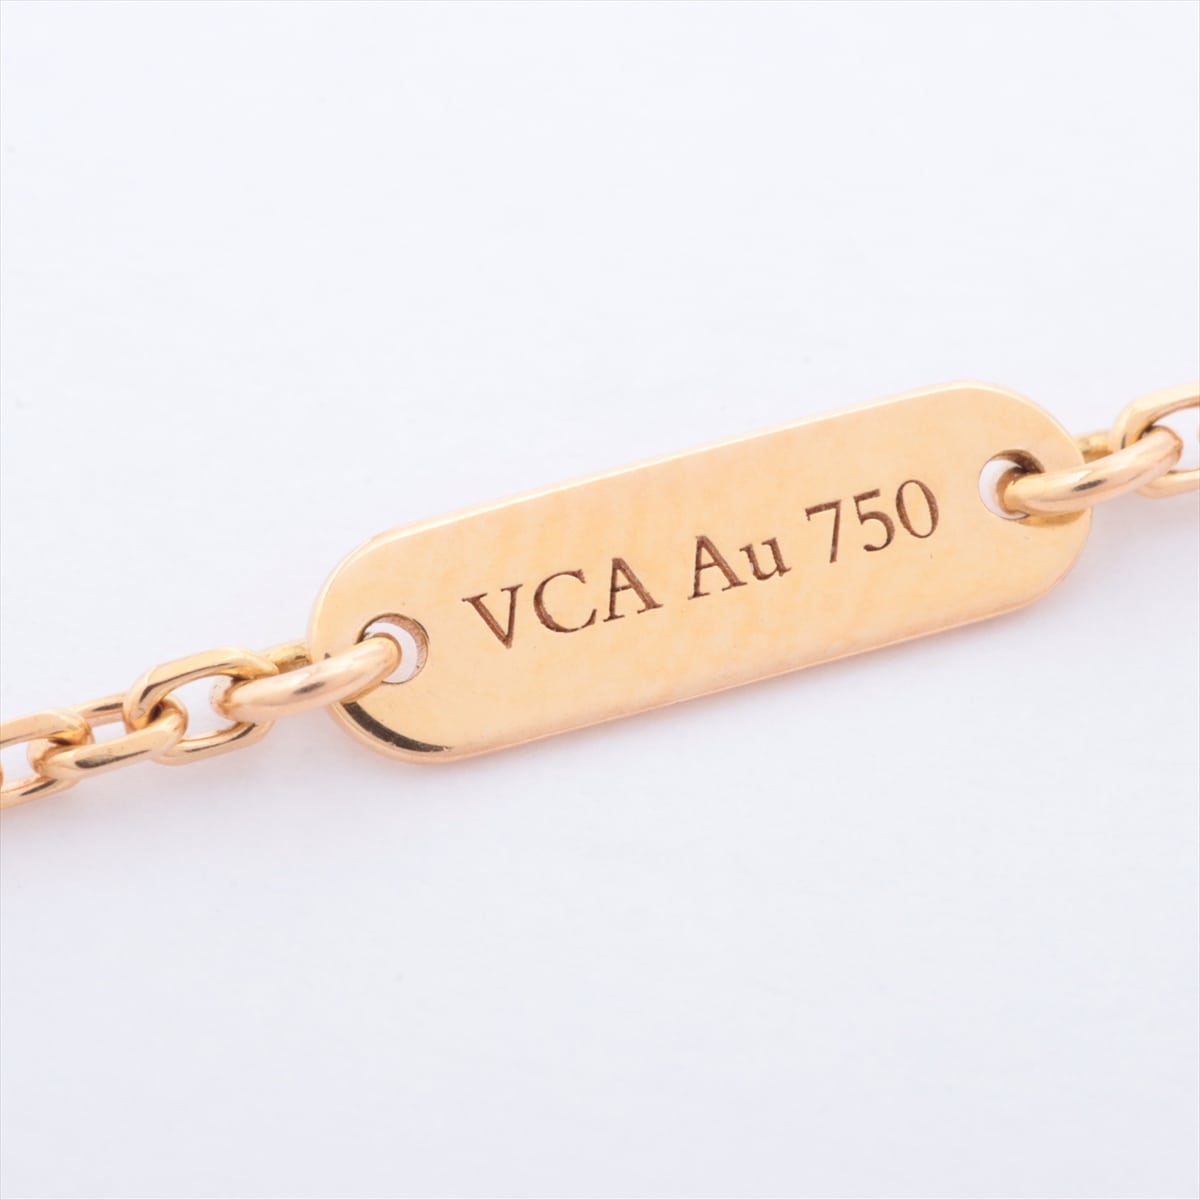 Van Cleef & Arpels Van Cleef & Arpels Vintage Alhambra Necklace 750PG 2012 limited